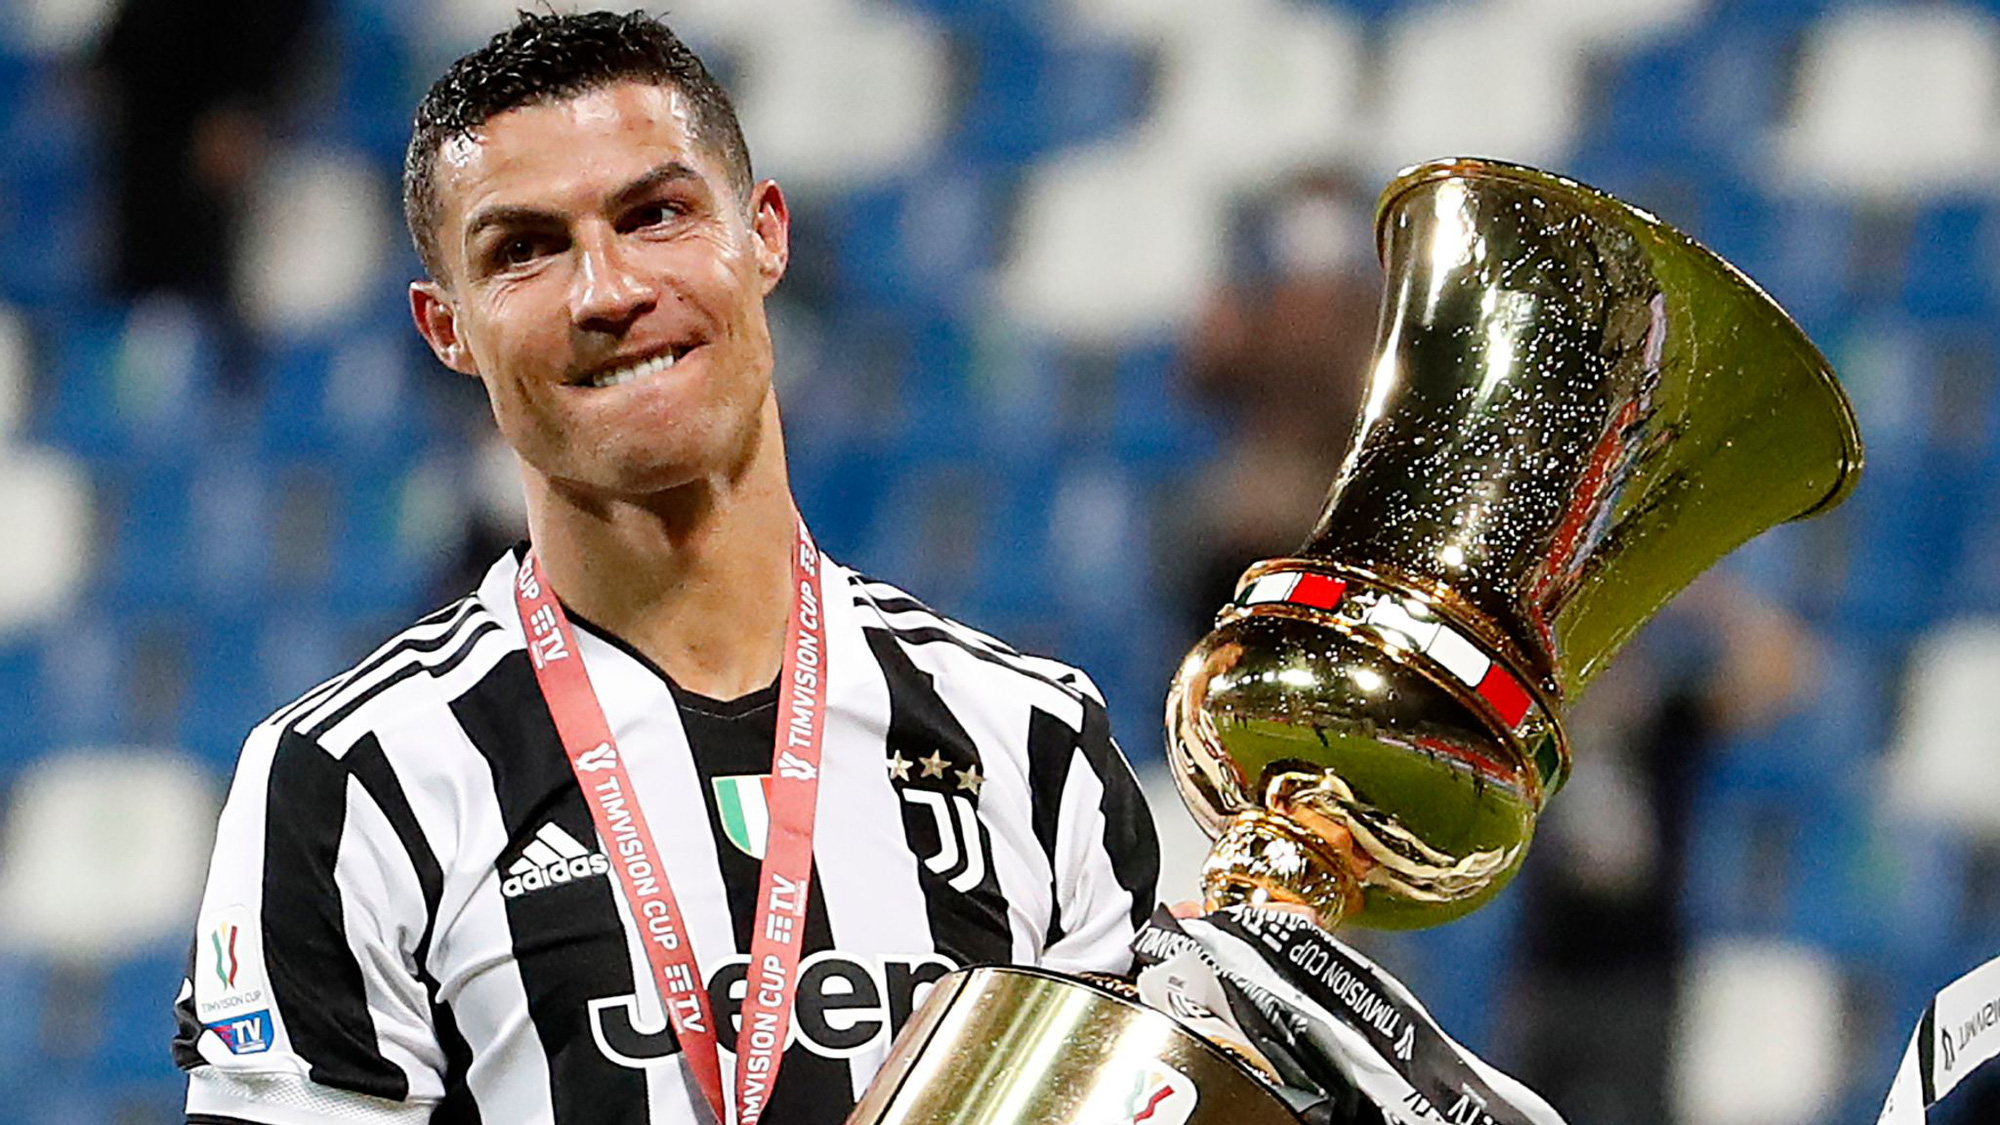 NÓNG: Ronaldo sắp rời Juventus để trở lại M.U? - Ảnh 1.